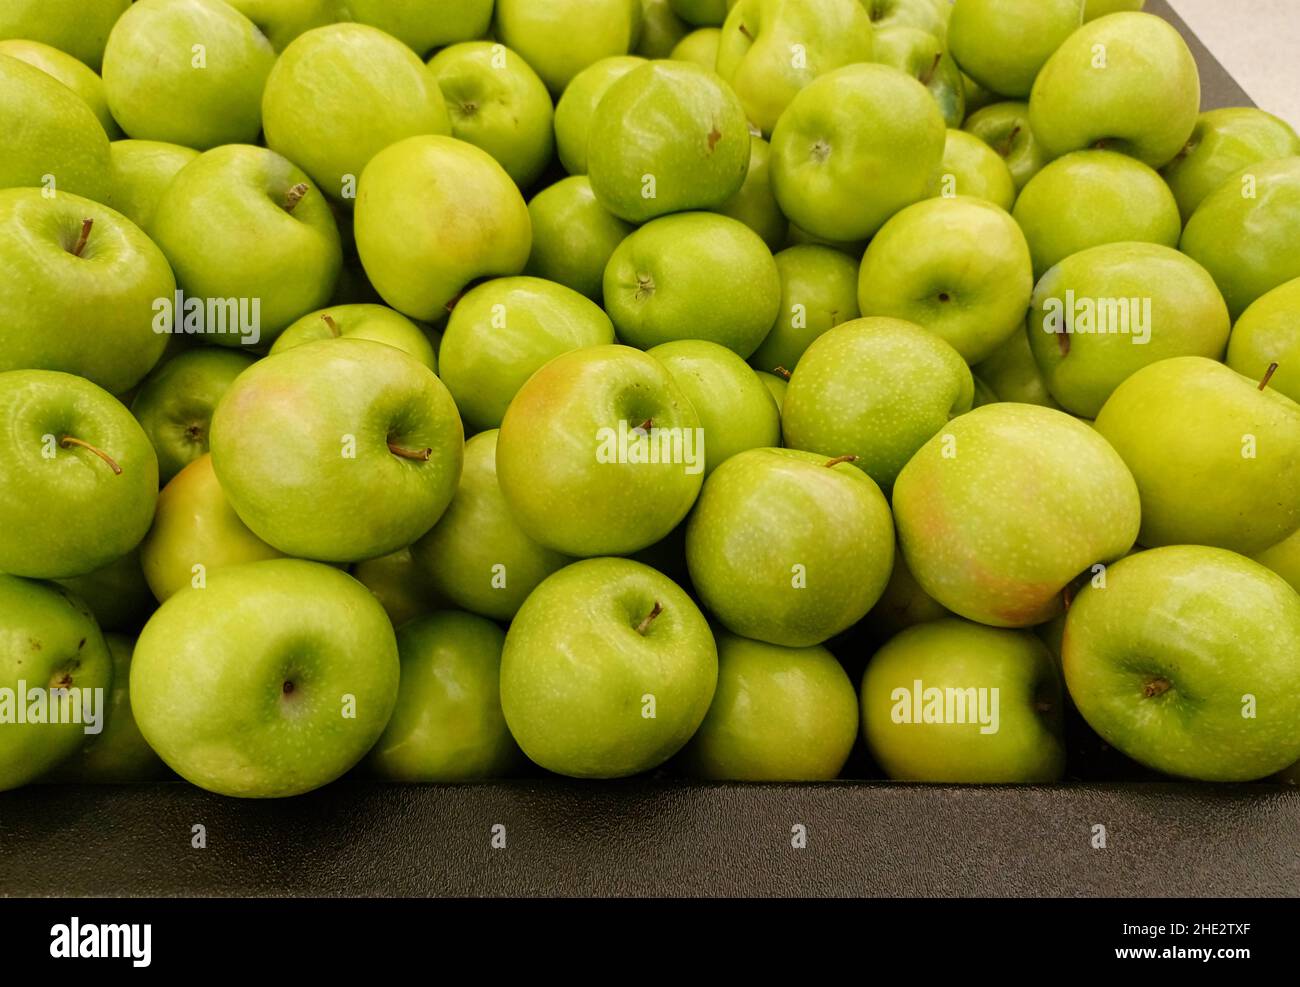 Reife Äpfel von Granny - verstreut Gemüsemarkt, in traditionellen Nahaufnahme einem Alamy Stockfotografie lose Smith